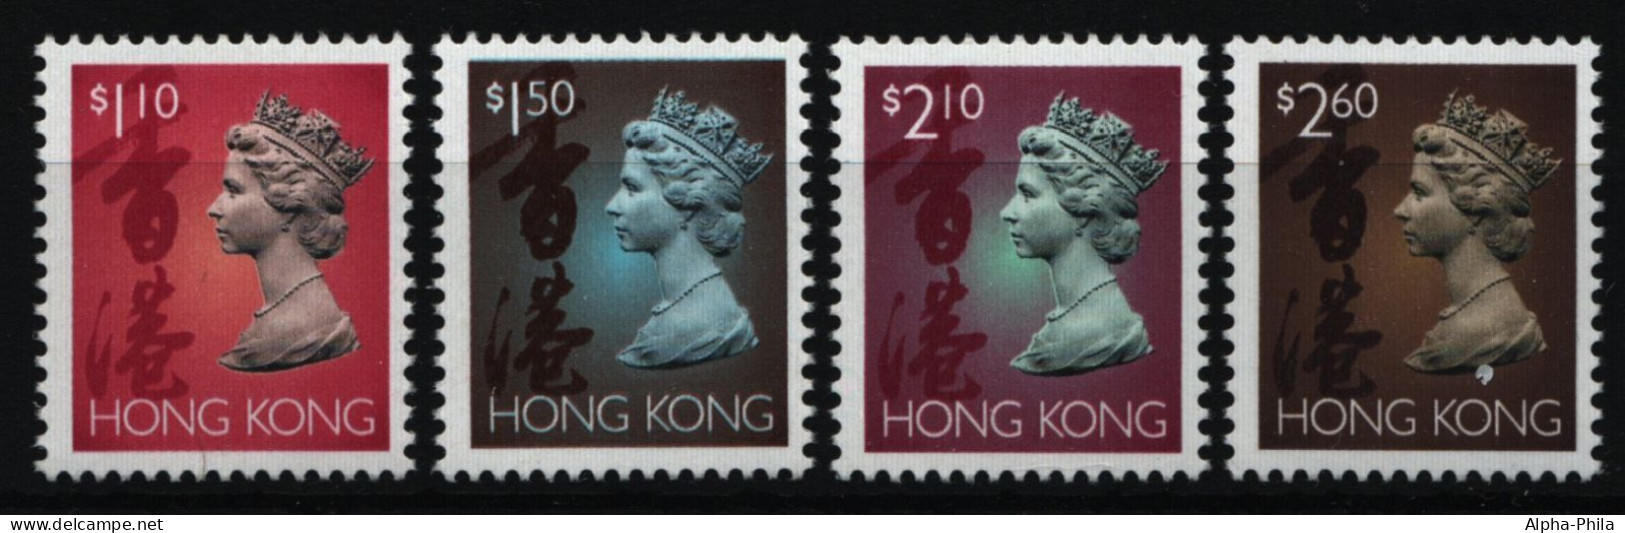 Hongkong 1995 - Mi-Nr. 744-747 I X ** - MNH - Freimarken - Queen Elizabeth II - Ongebruikt